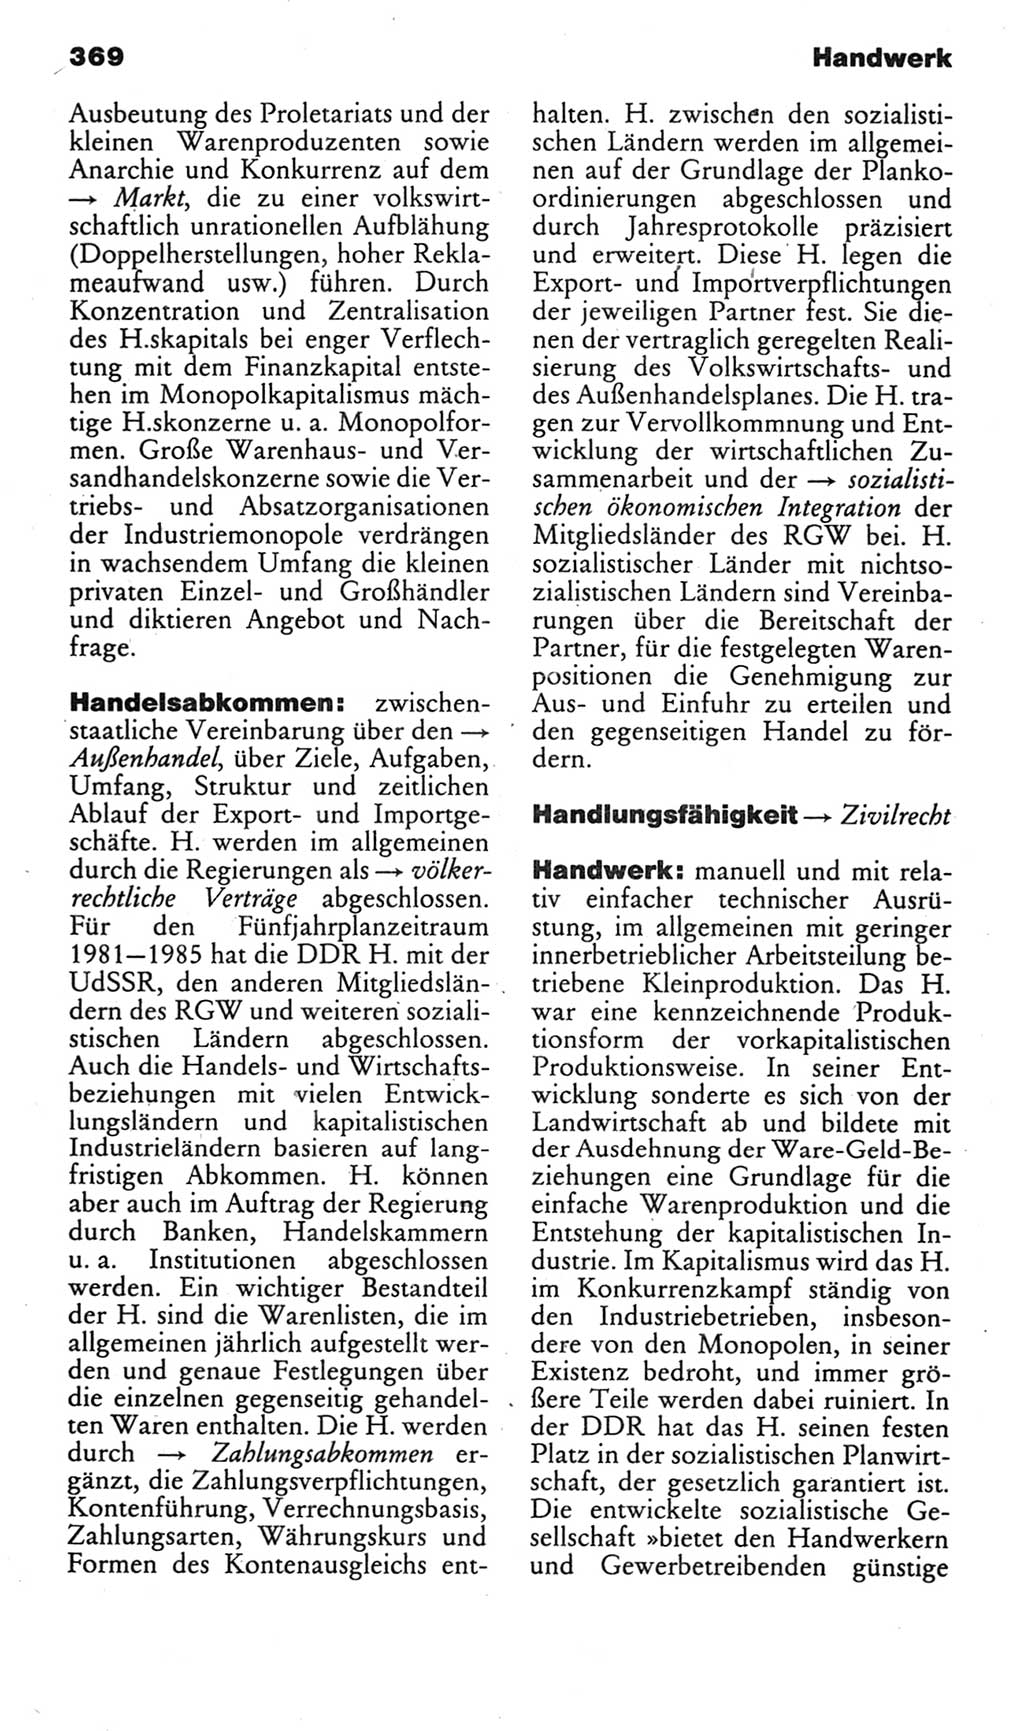 Kleines politisches Wörterbuch [Deutsche Demokratische Republik (DDR)] 1985, Seite 369 (Kl. pol. Wb. DDR 1985, S. 369)